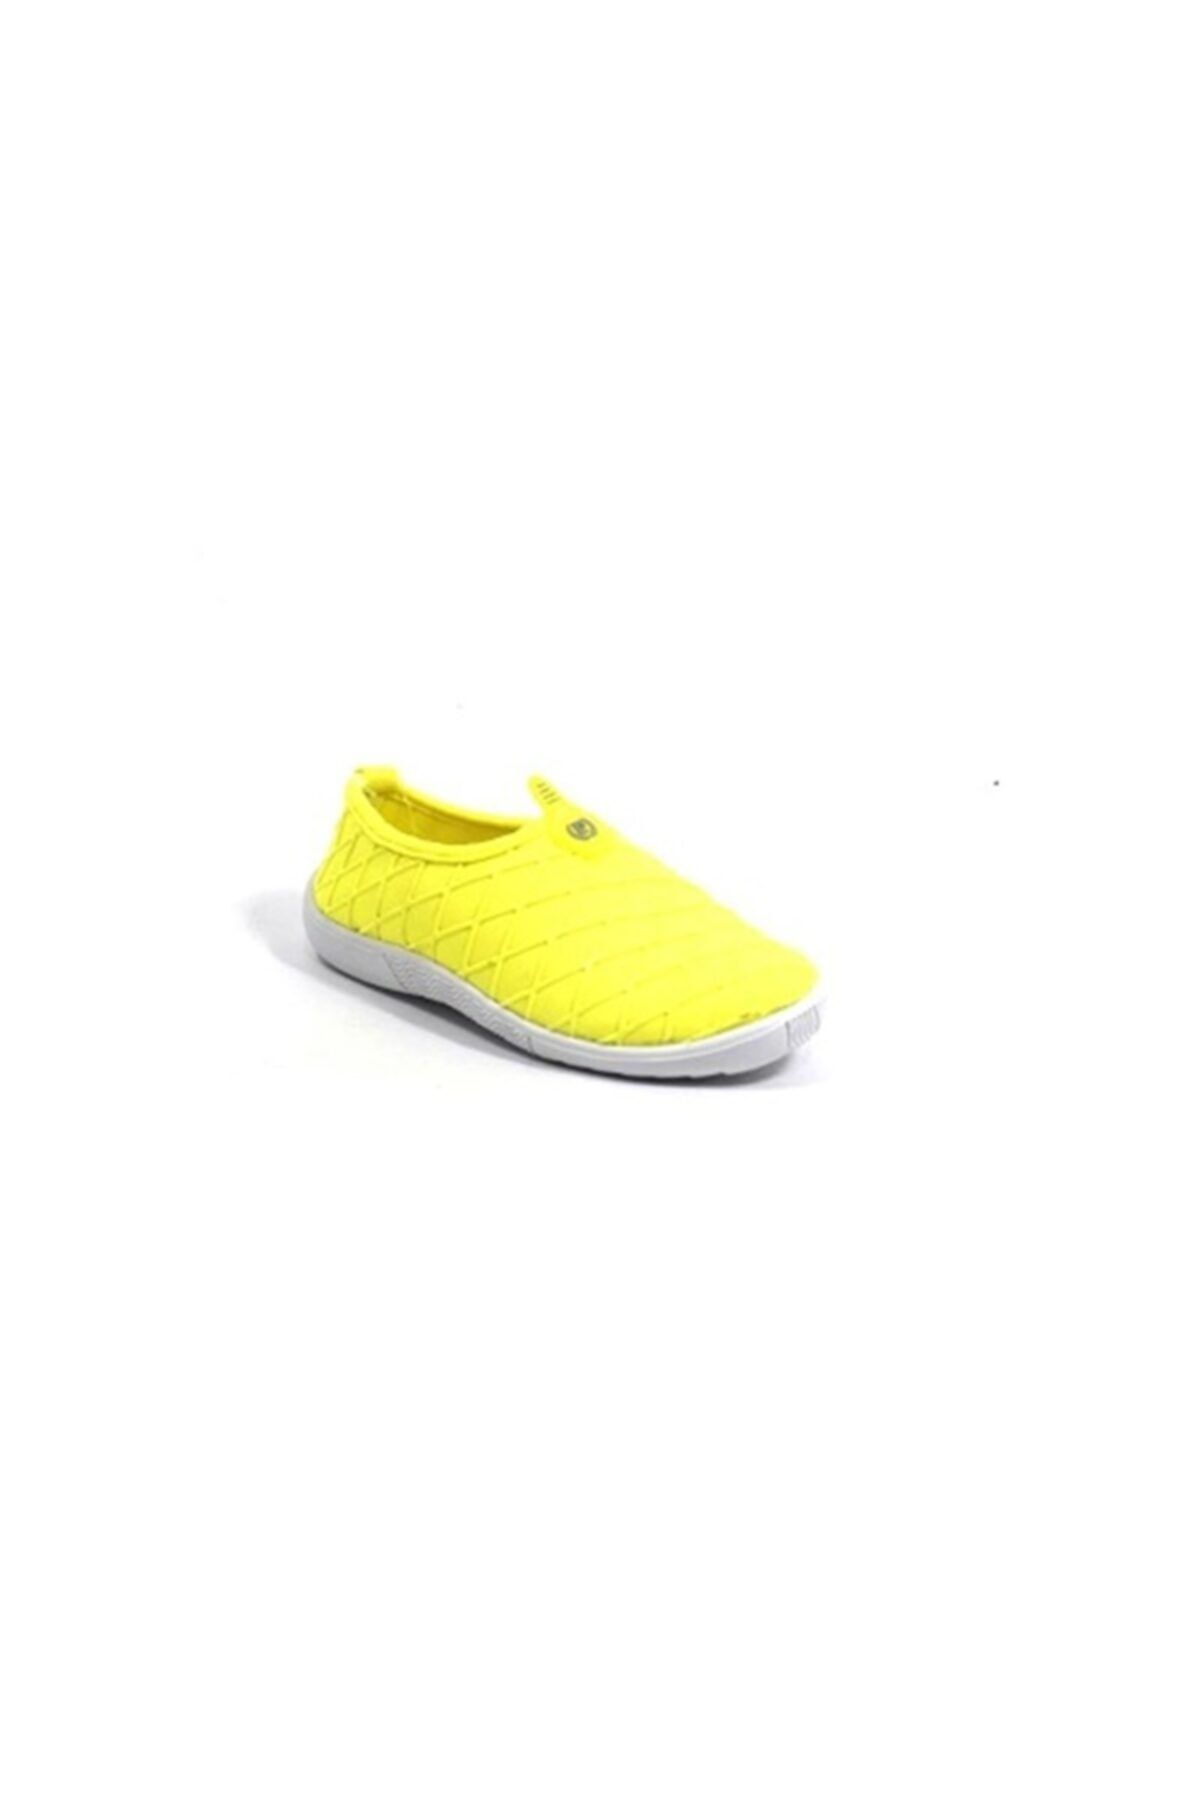 Pierre Cardin Pcs-10280 Aqua Erkek Çocuk Ayakkabı Neon Sarı